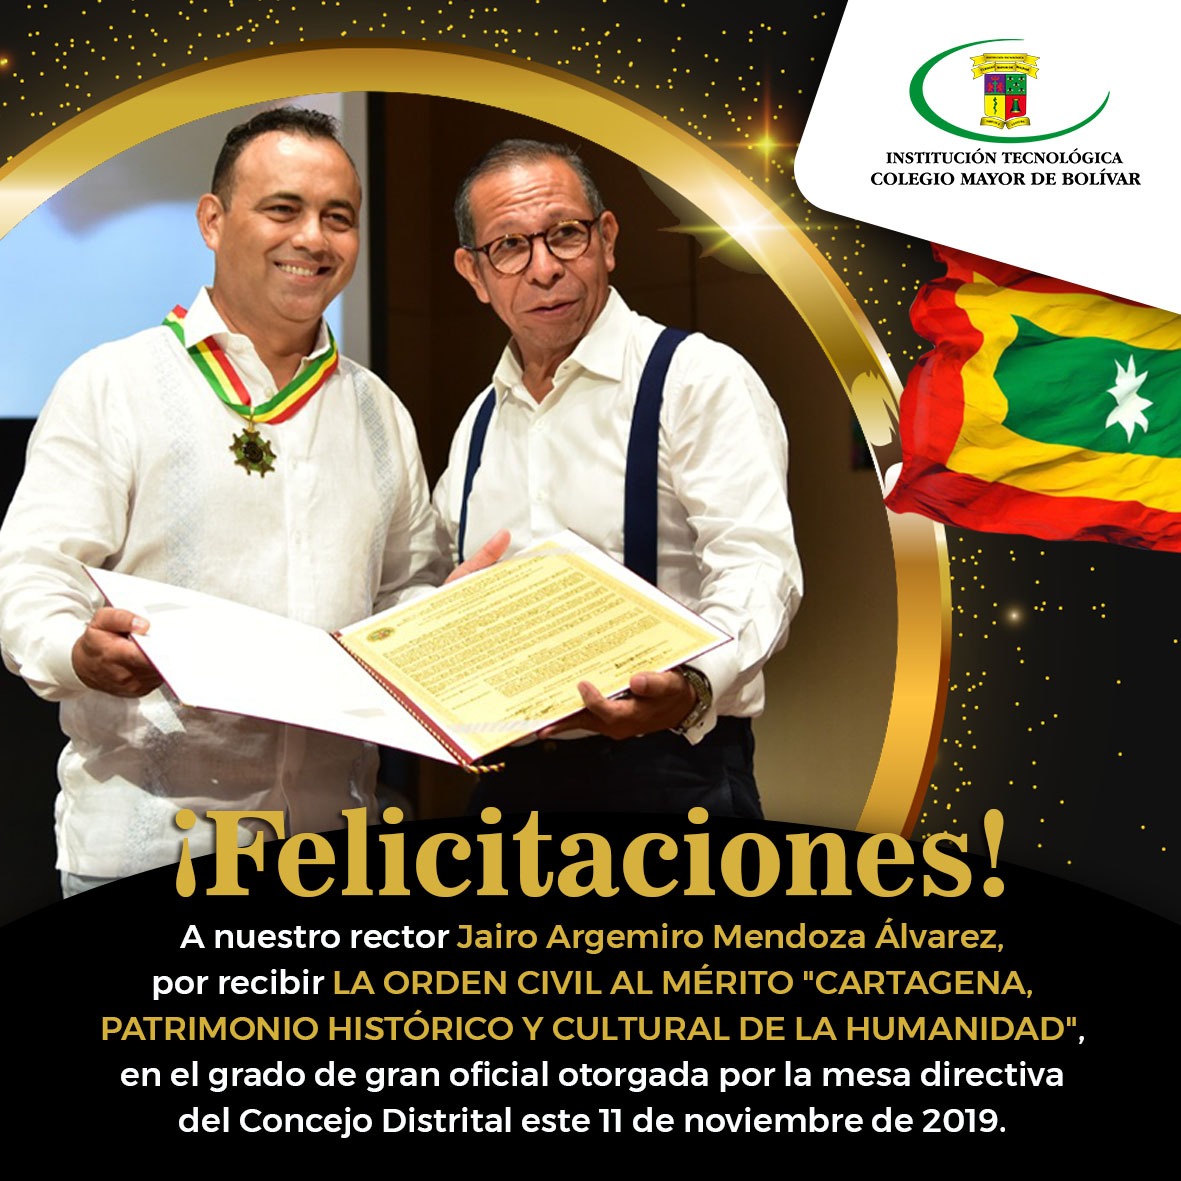 Orden civil al mérito "Cartagena patrimonio histórico y cultural de la humanidad"